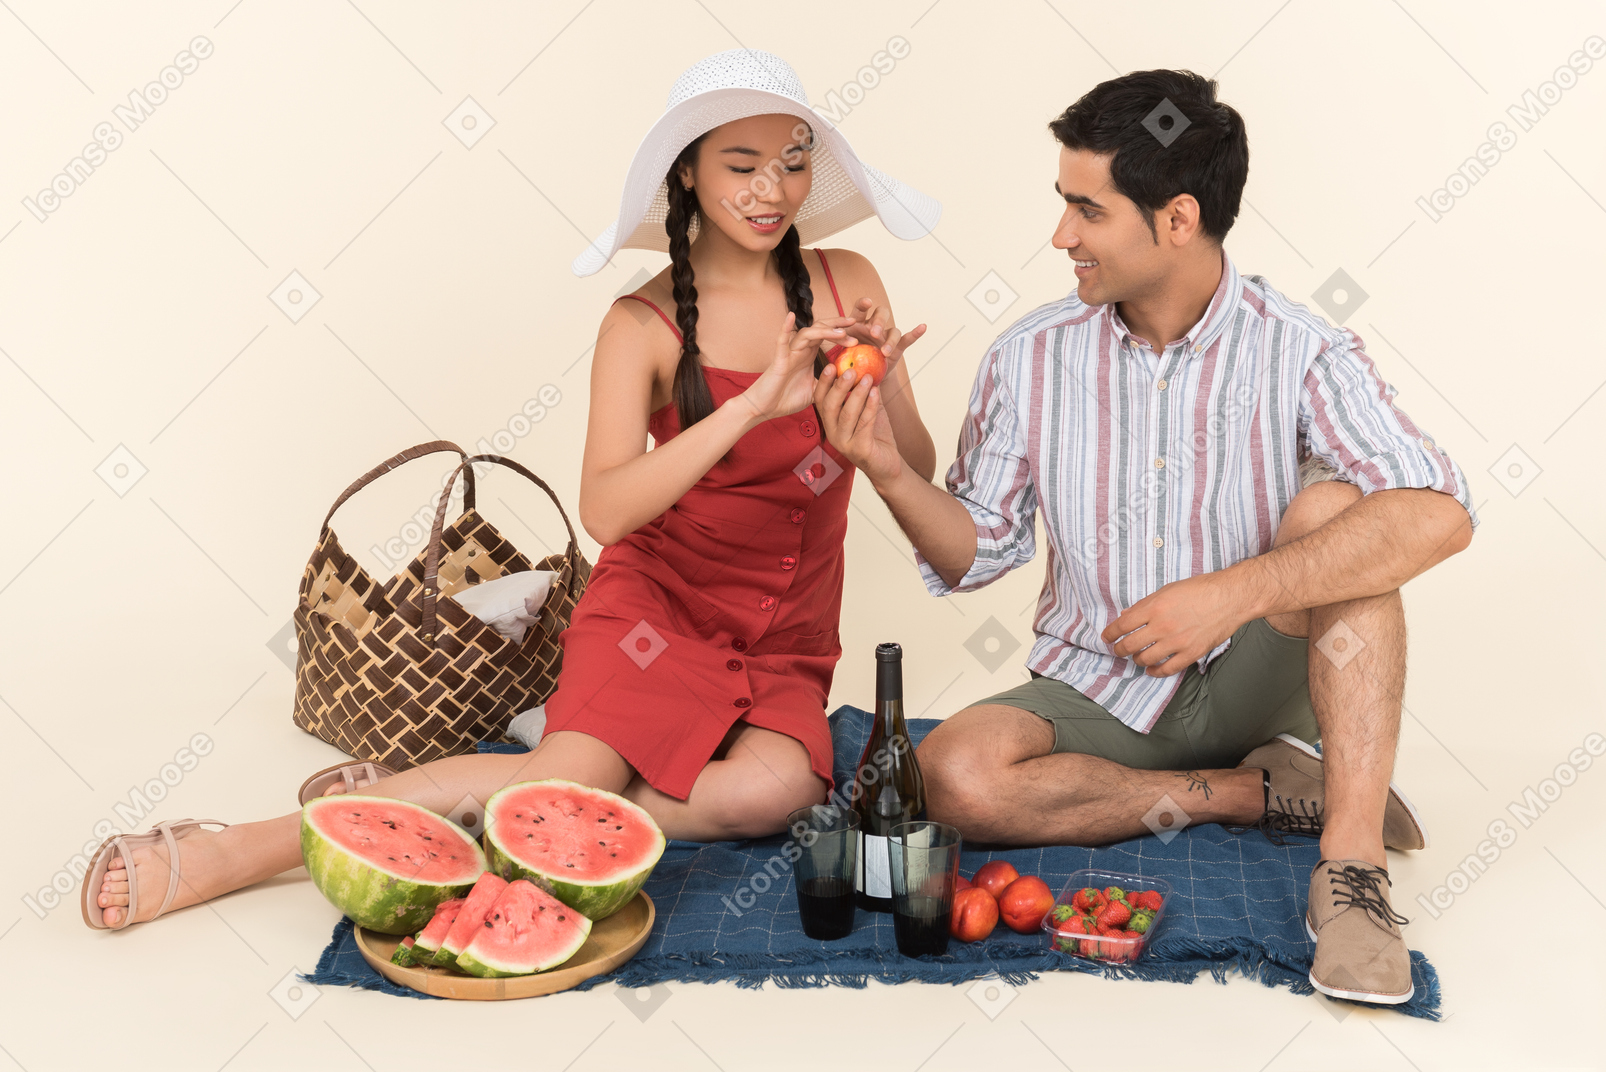 Giovane che dà i frutti ad una ragazza mentre fanno picnic